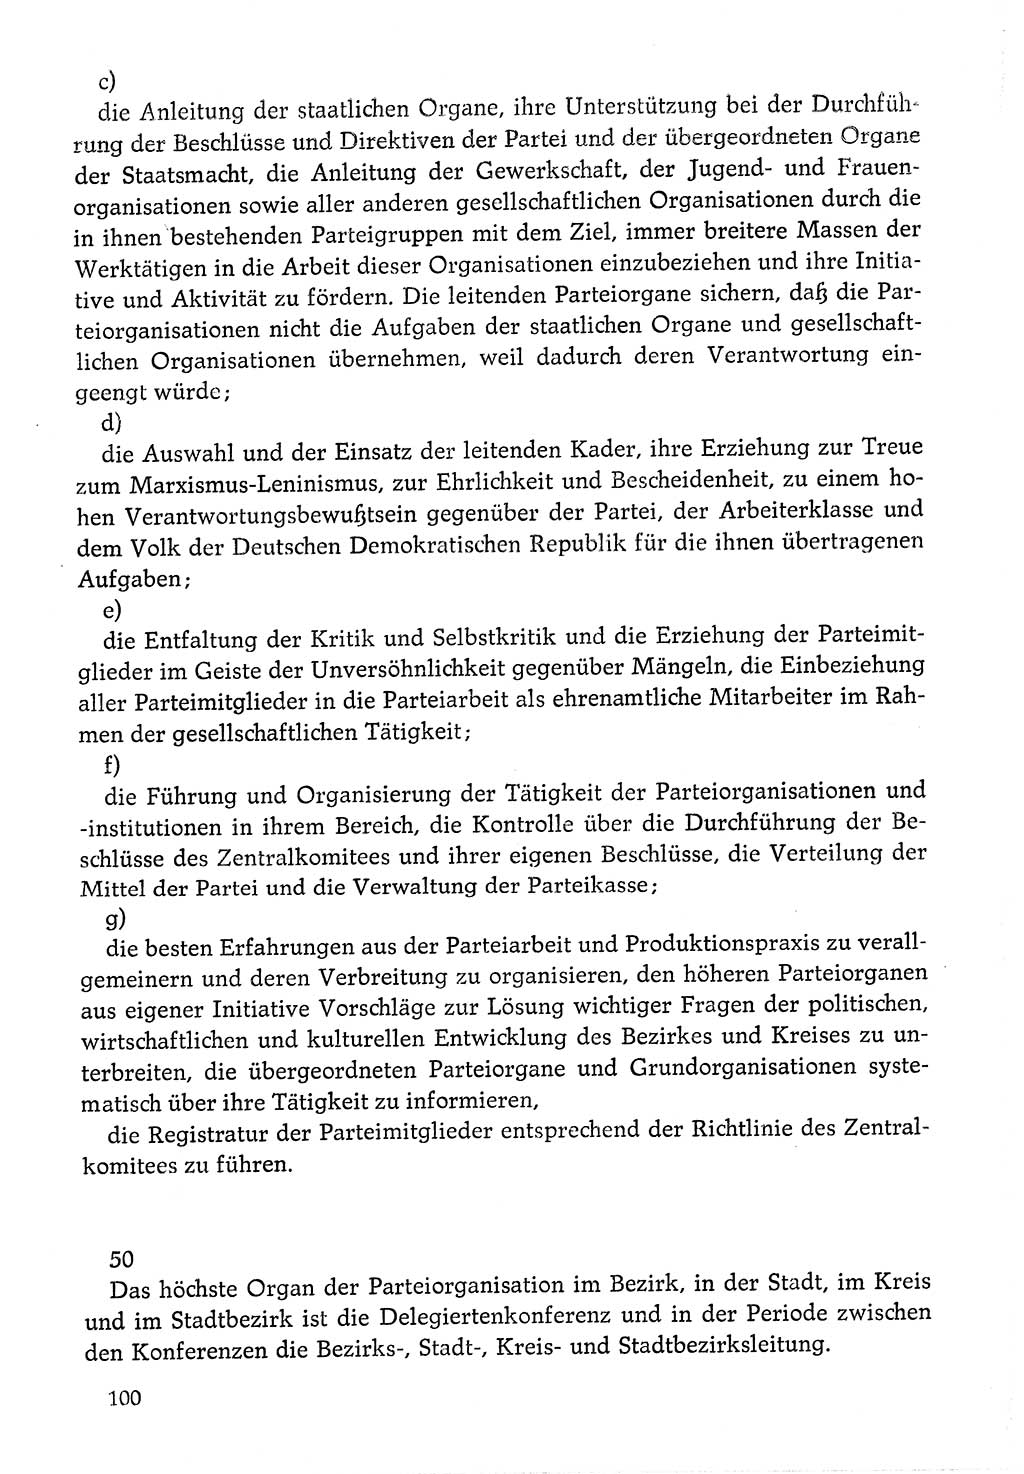 Dokumente der Sozialistischen Einheitspartei Deutschlands (SED) [Deutsche Demokratische Republik (DDR)] 1976-1977, Seite 100 (Dok. SED DDR 1976-1977, S. 100)